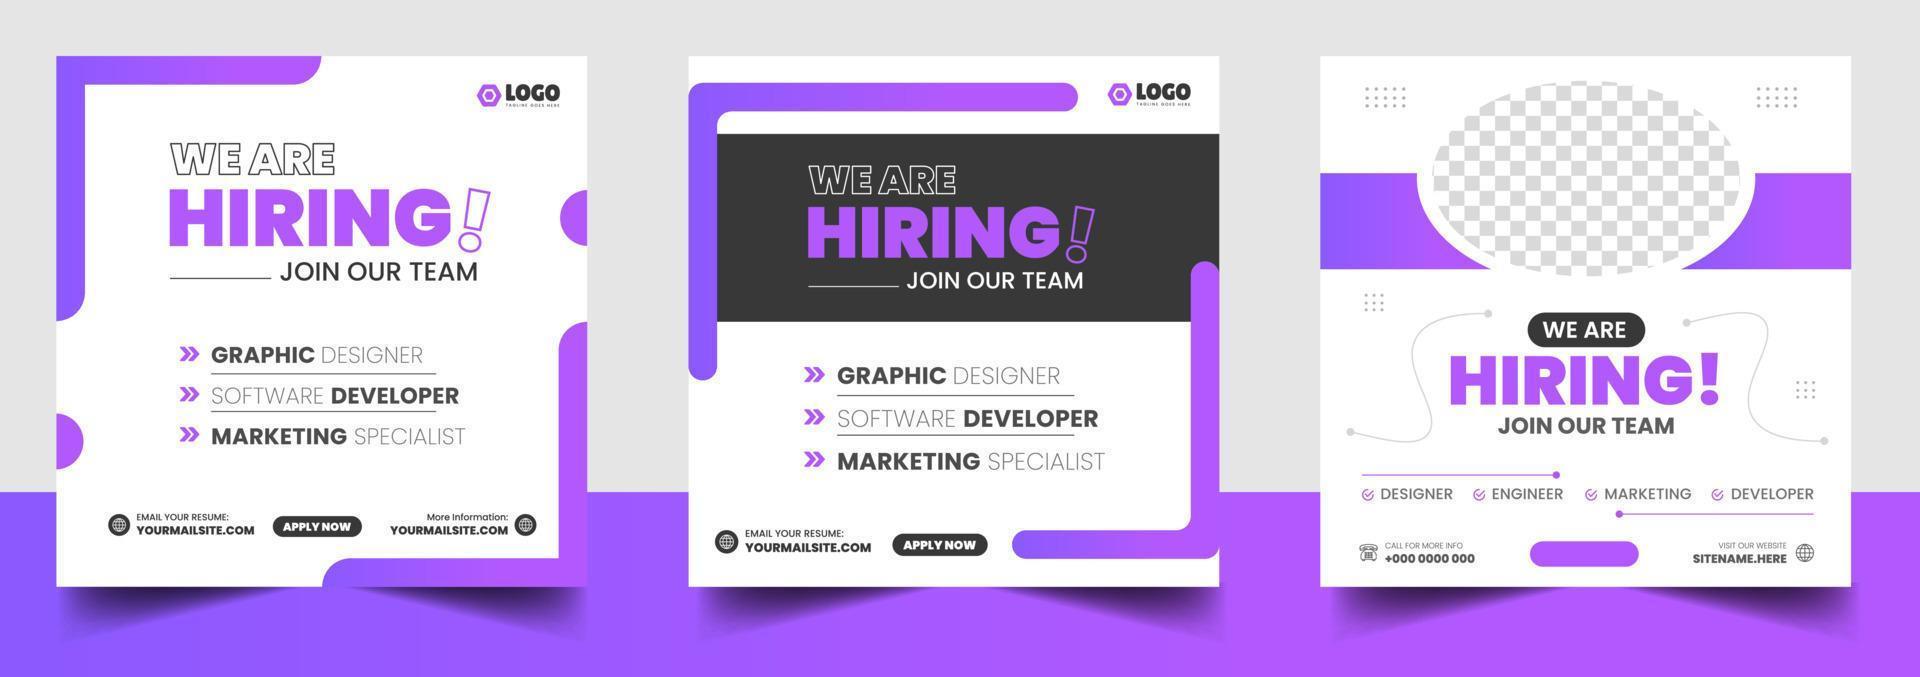 vi anställer lediga jobb i sociala medier post banner designmall med lila färg. vi anställer lediga jobb fyrkantig webbbannerdesign. vektor